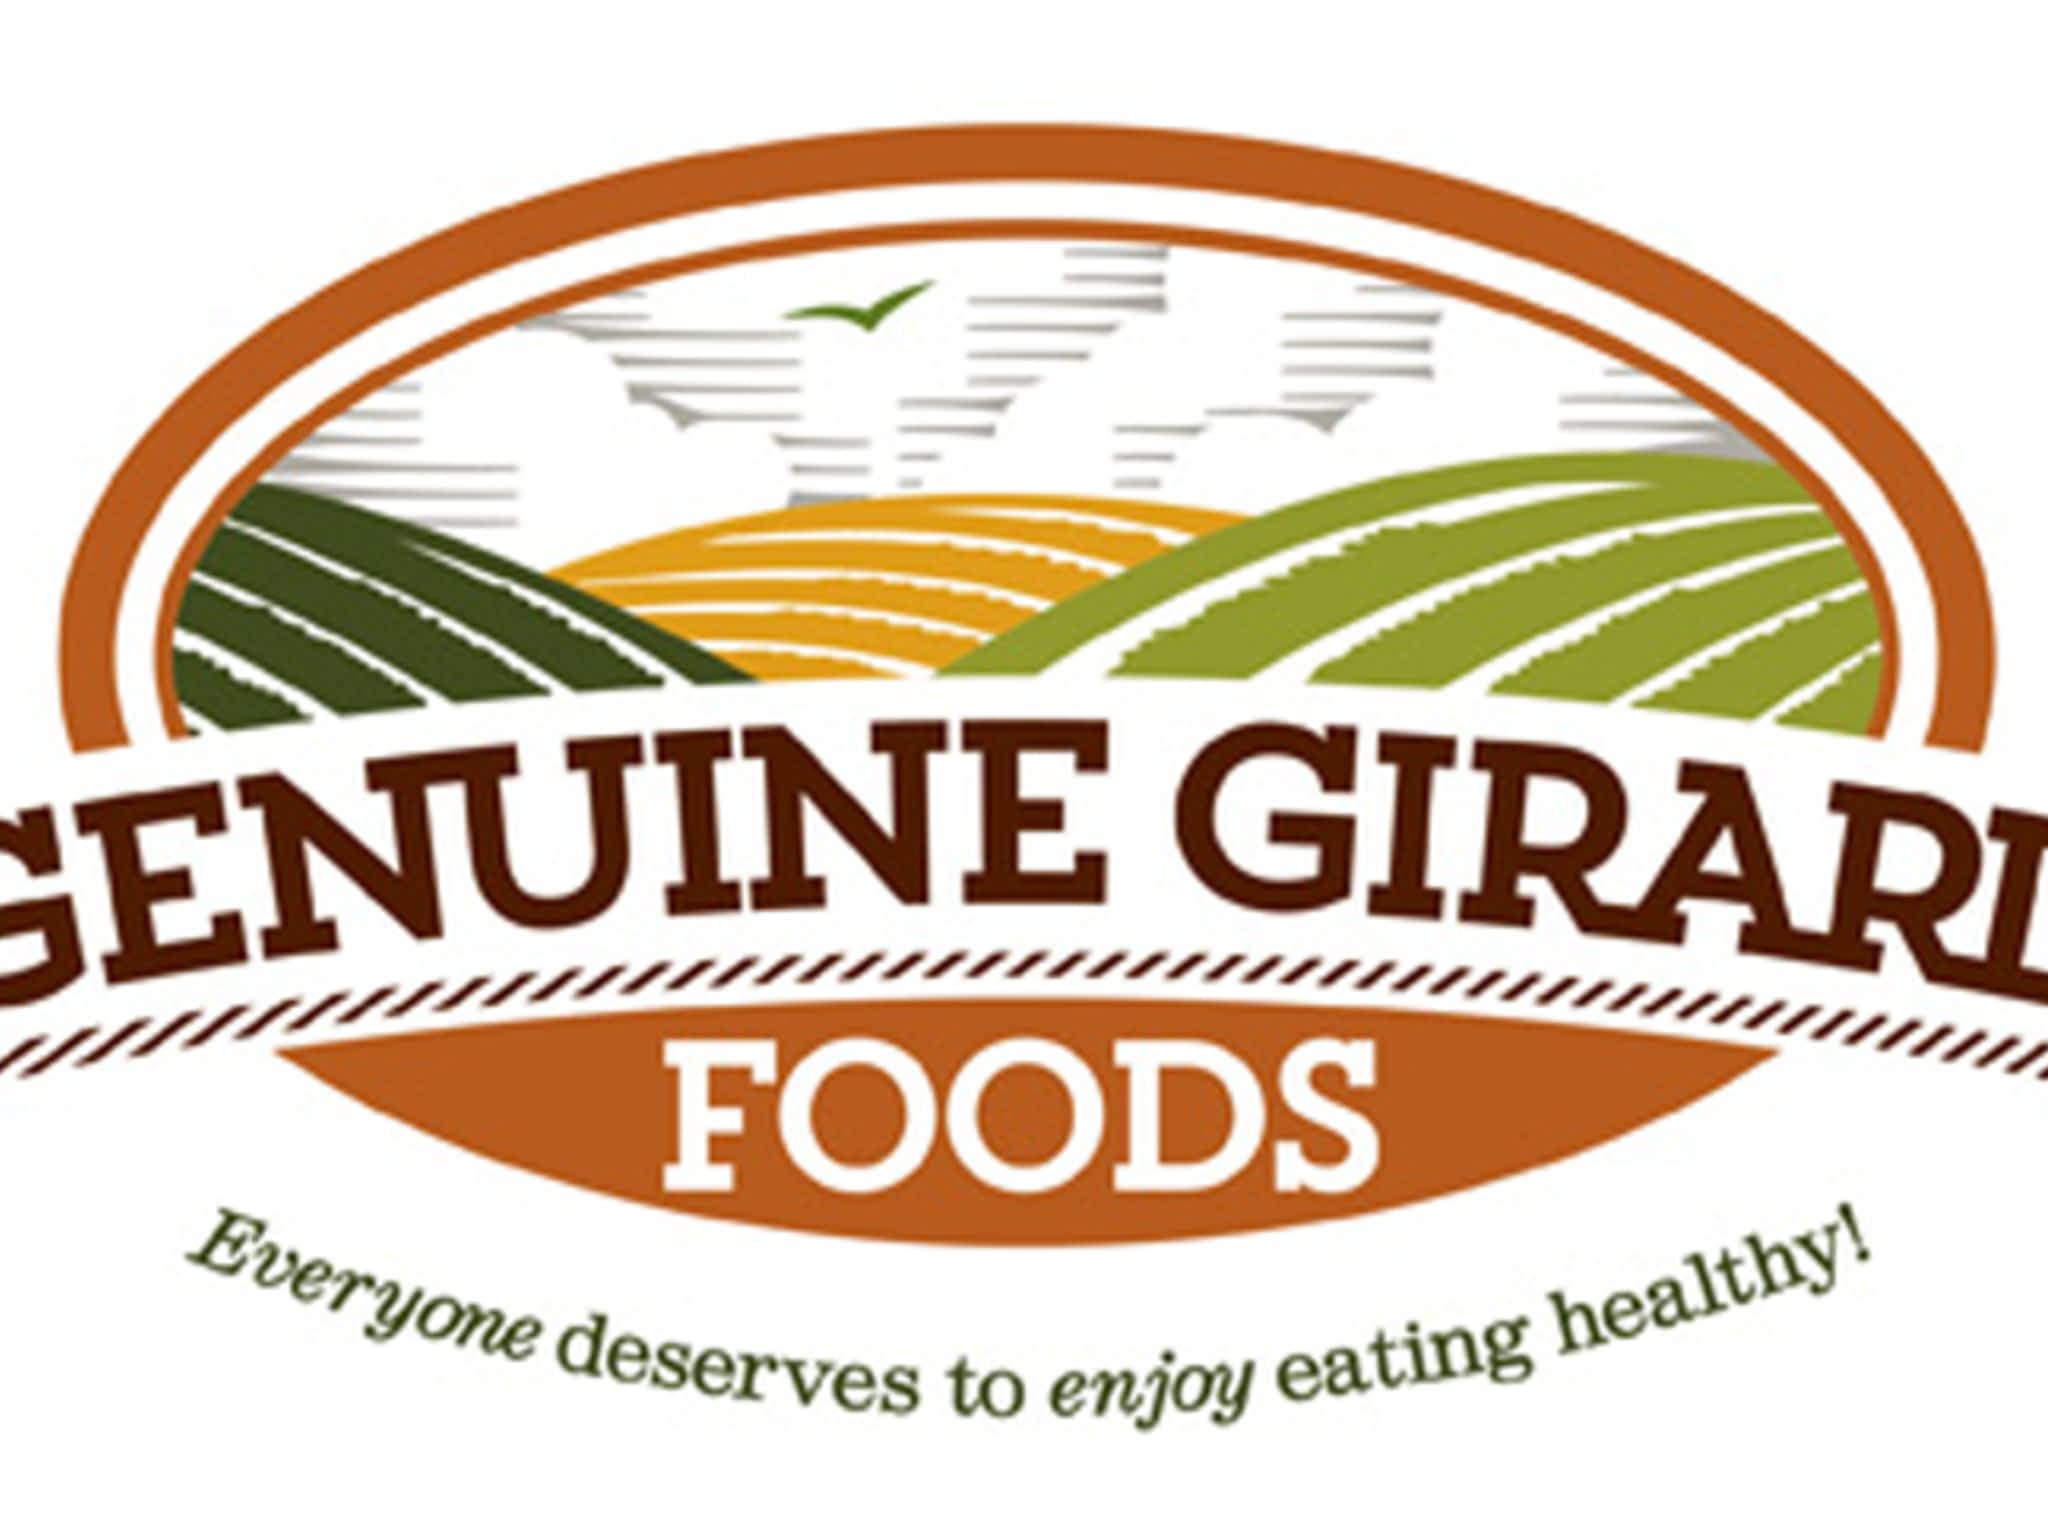 photo Genuine Girard Foods